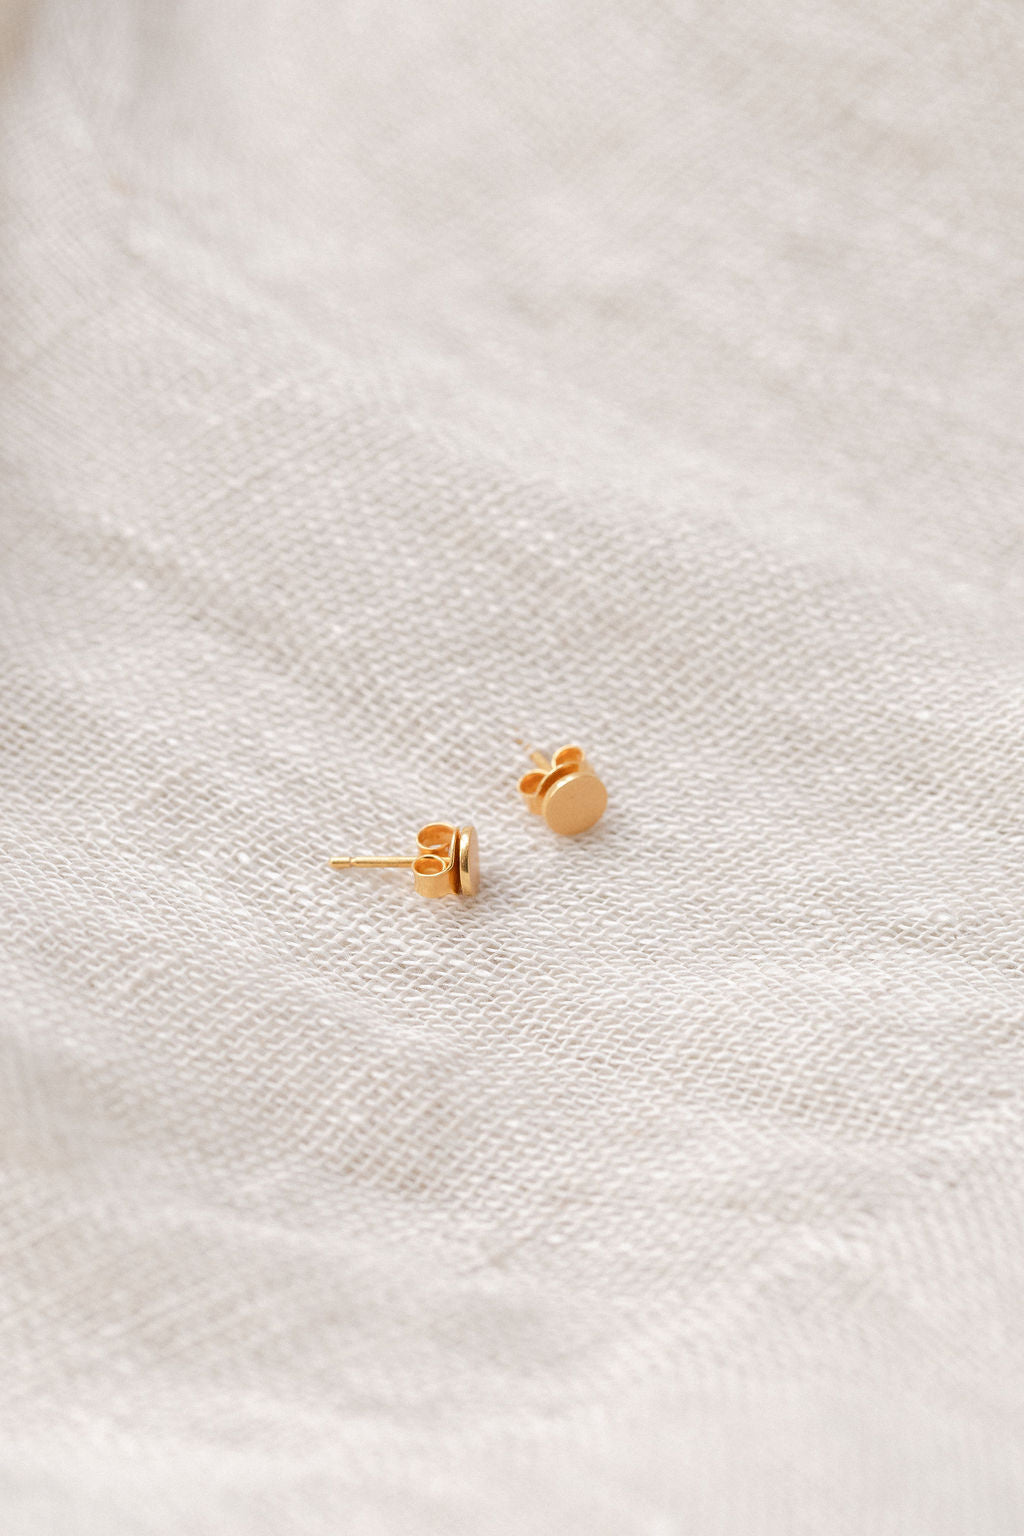 Aanaya Studs - Gold Button Earrings